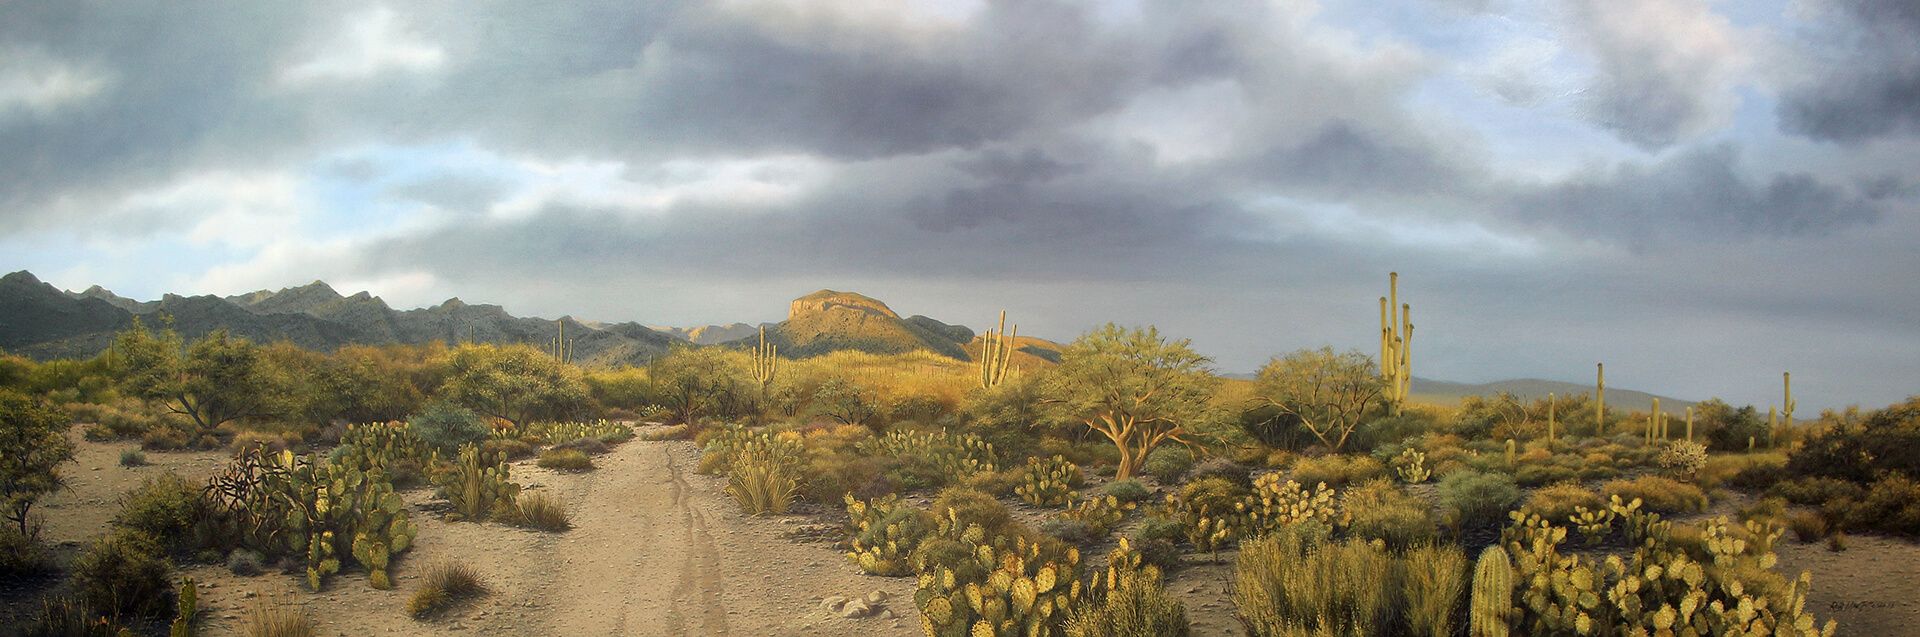 Photorealistic painting of Sabino Canyon